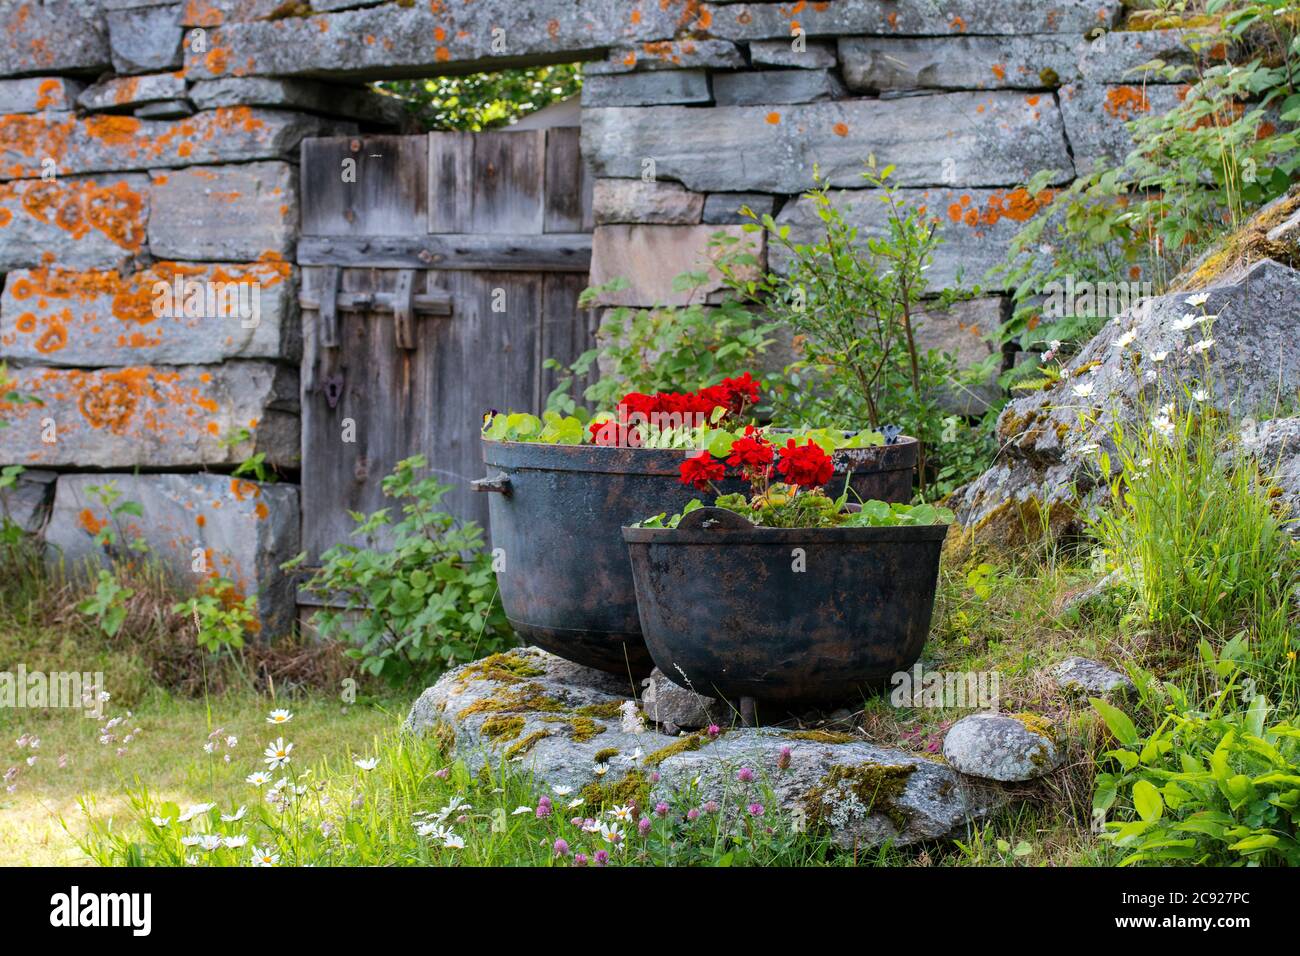 Jardin rustique informel de campagne/ Rutikaler informaler Landgarten/ jardin de campagne informal rustique au village de montagne de LOM, Norvège Banque D'Images